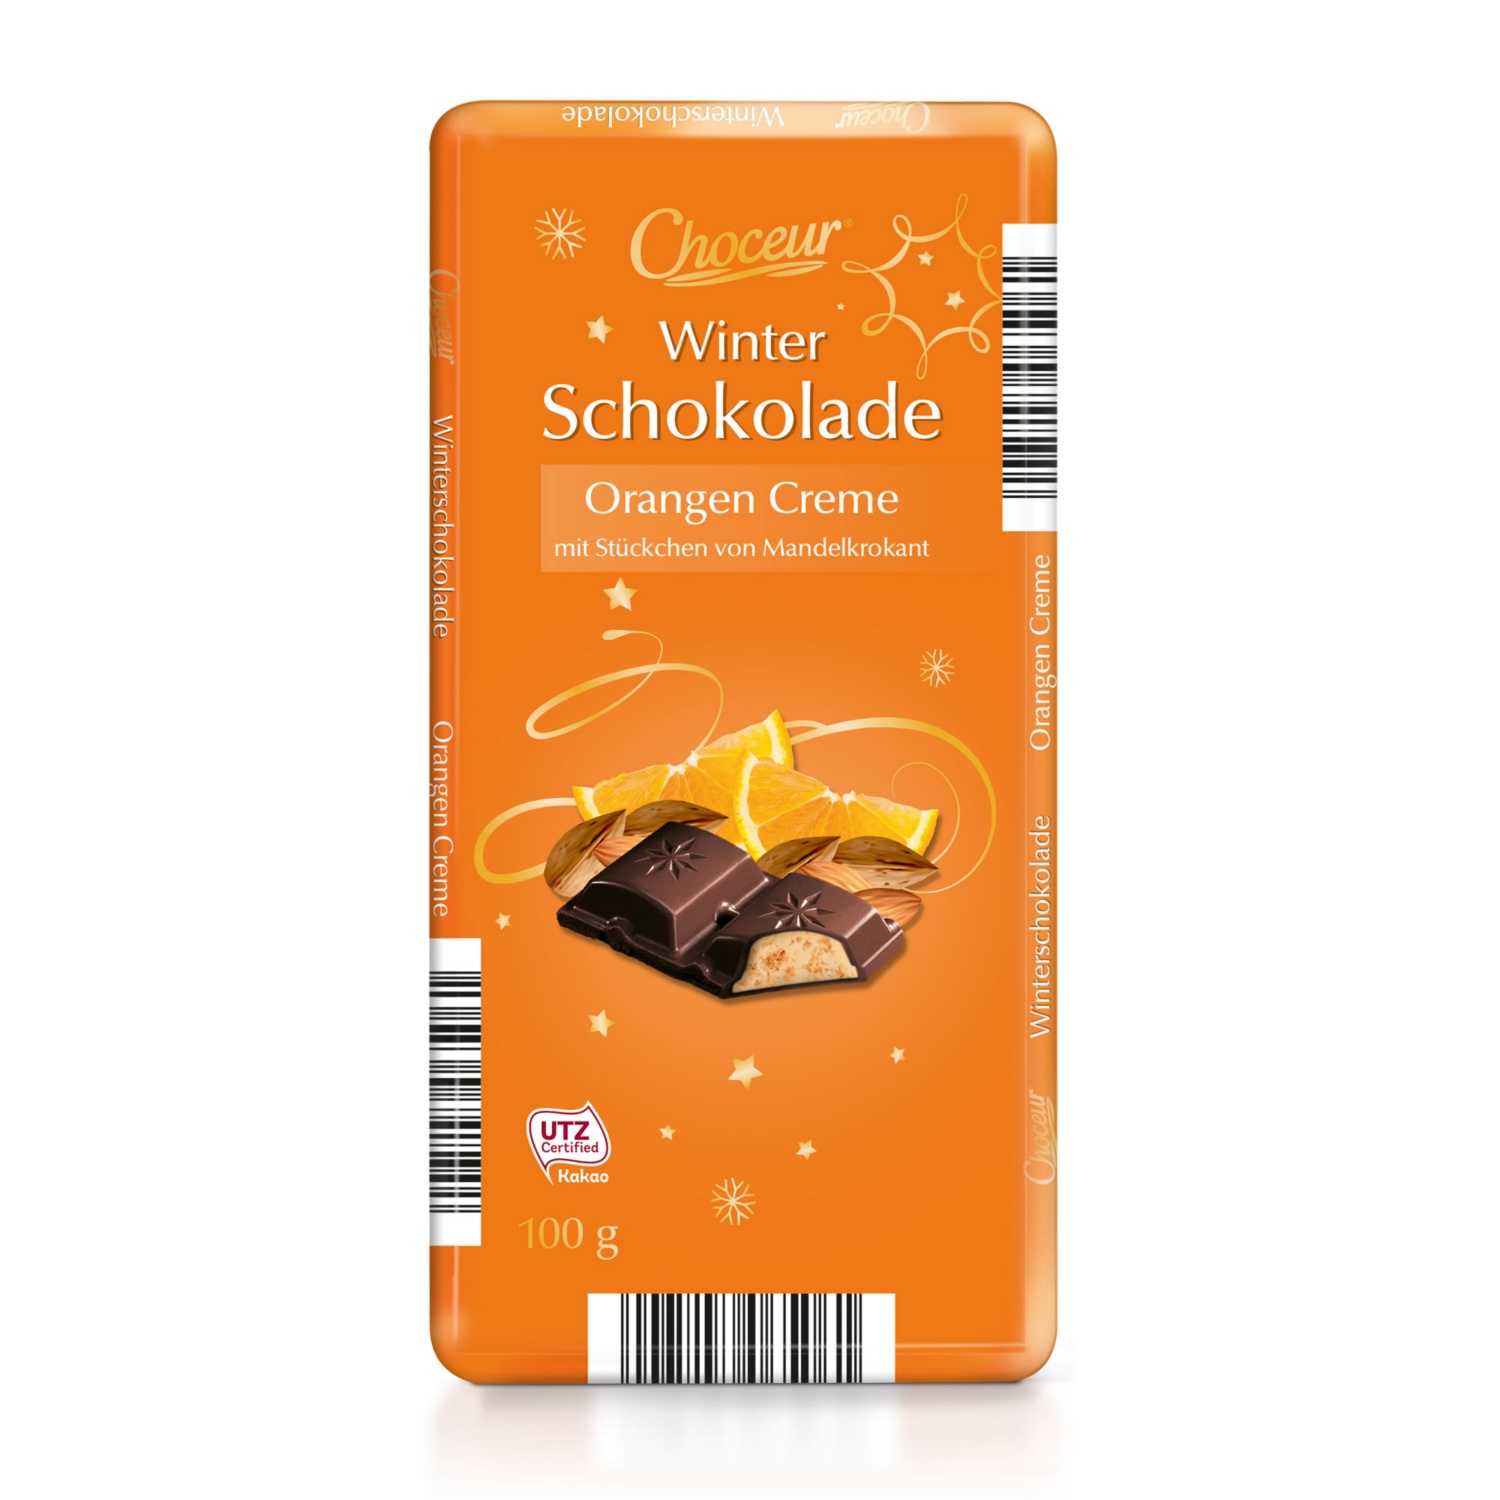 CHOCEUR Winterschokolade, Orangencreme